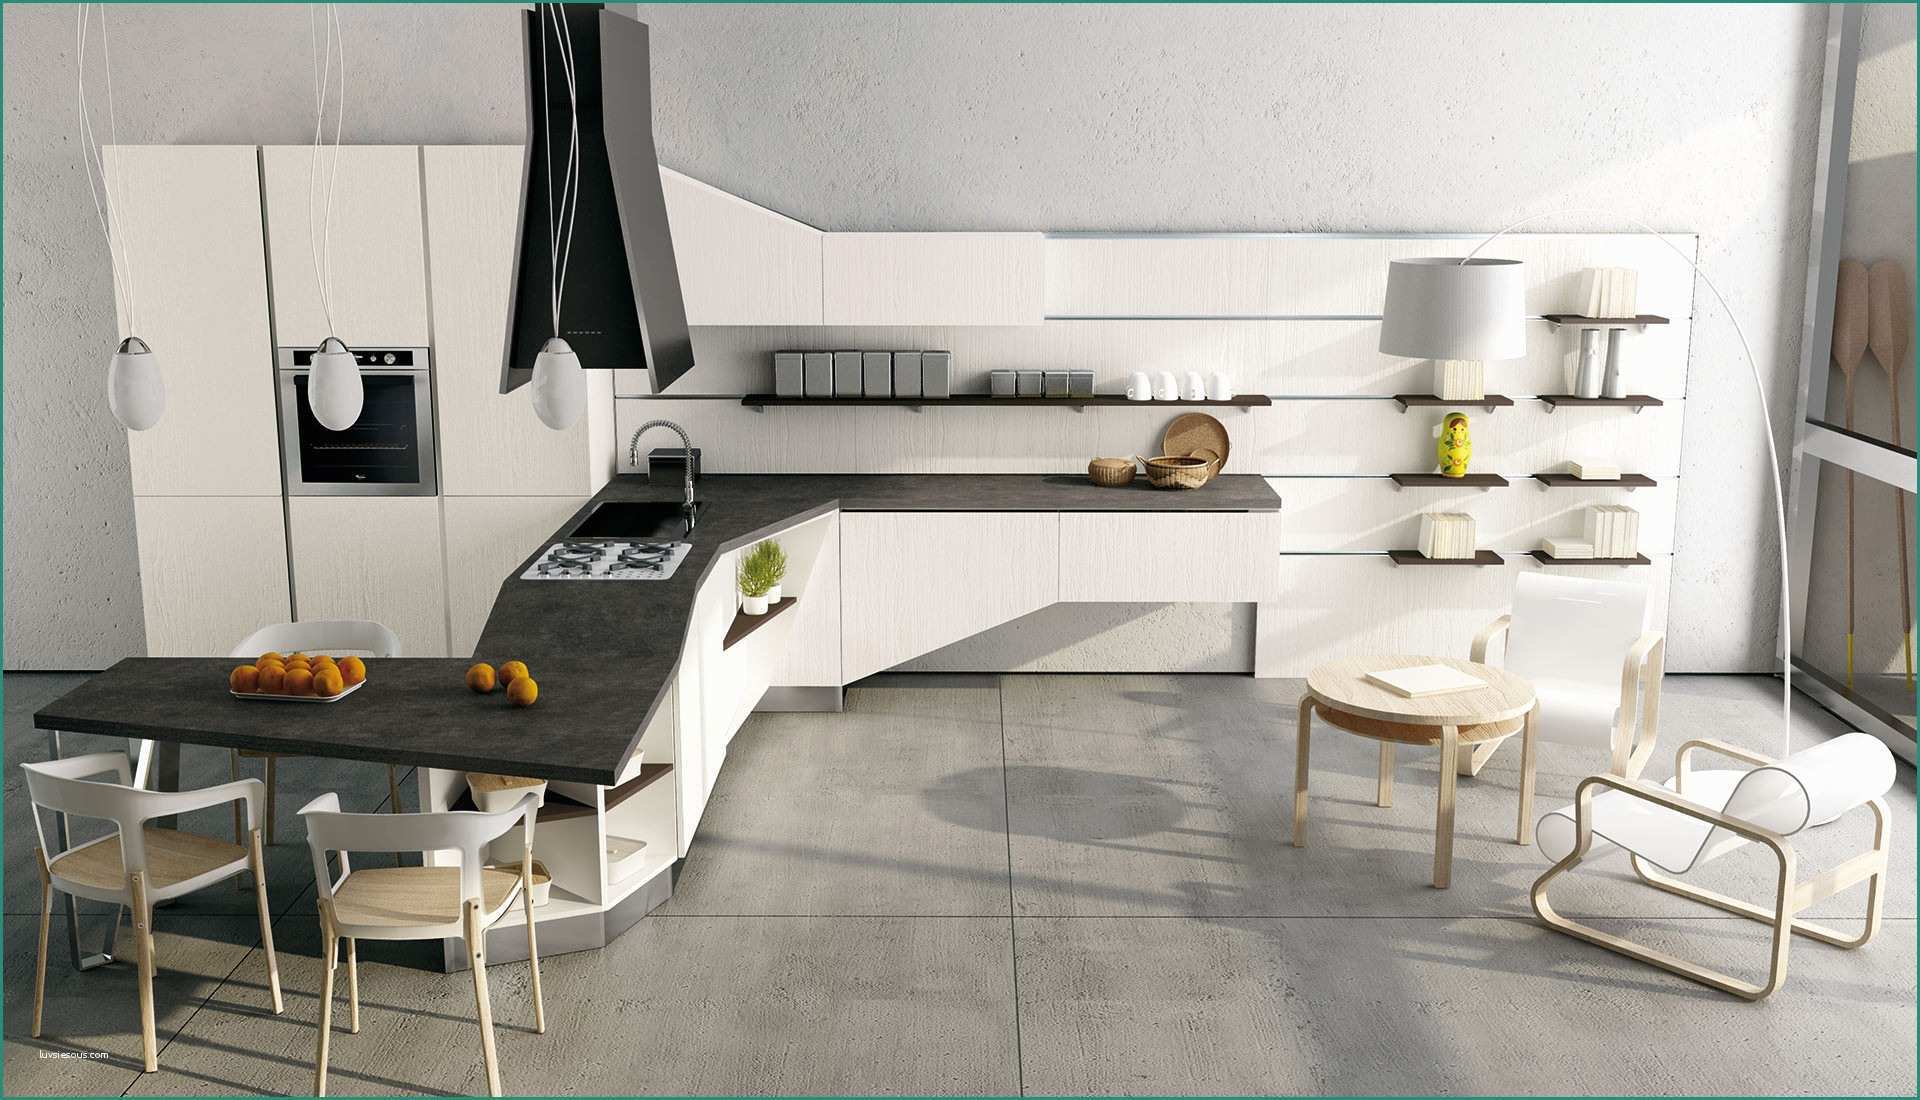 Soluzioni Cucine Piccole E Colori Per Cucina Moderna Cucina Moderna Colore Bianco Parashizzi